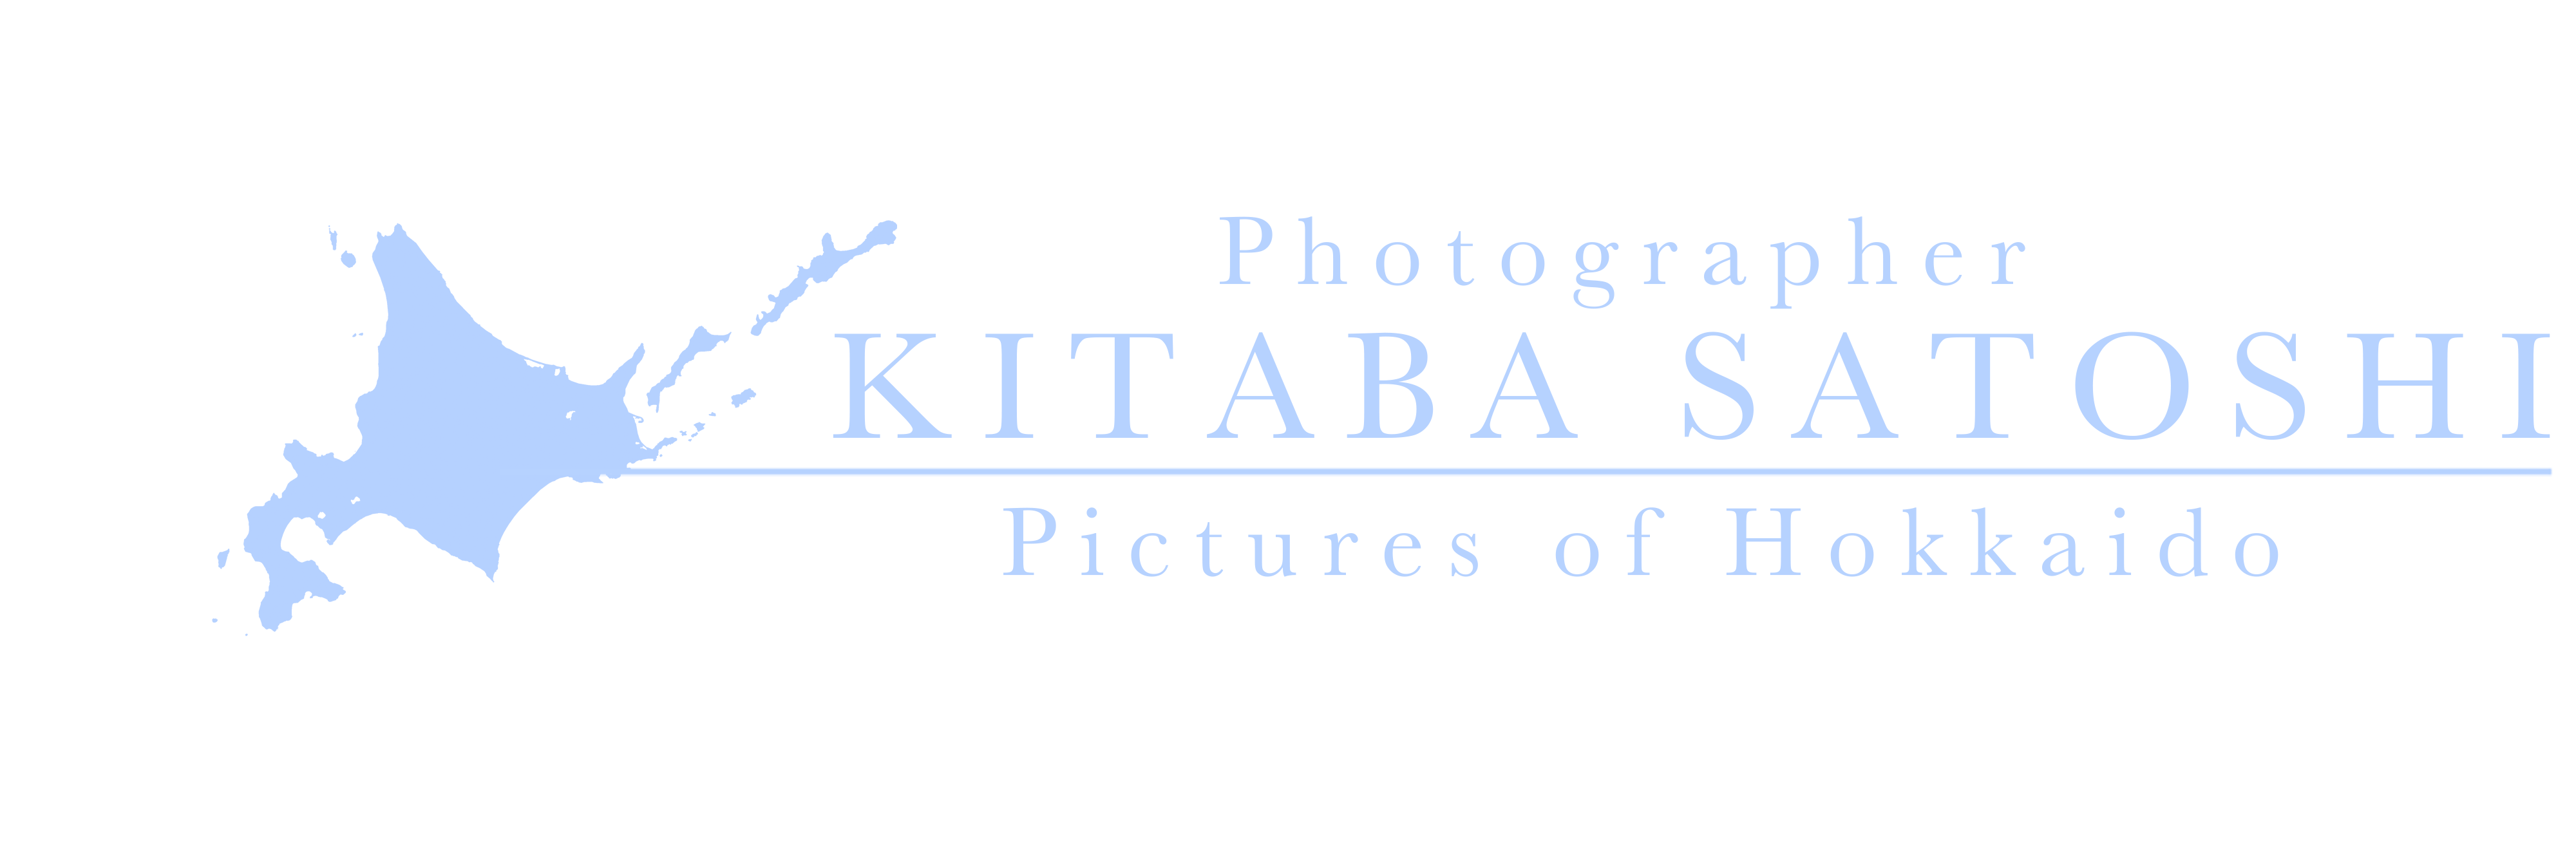 Kitaba Satoshi Official Shop